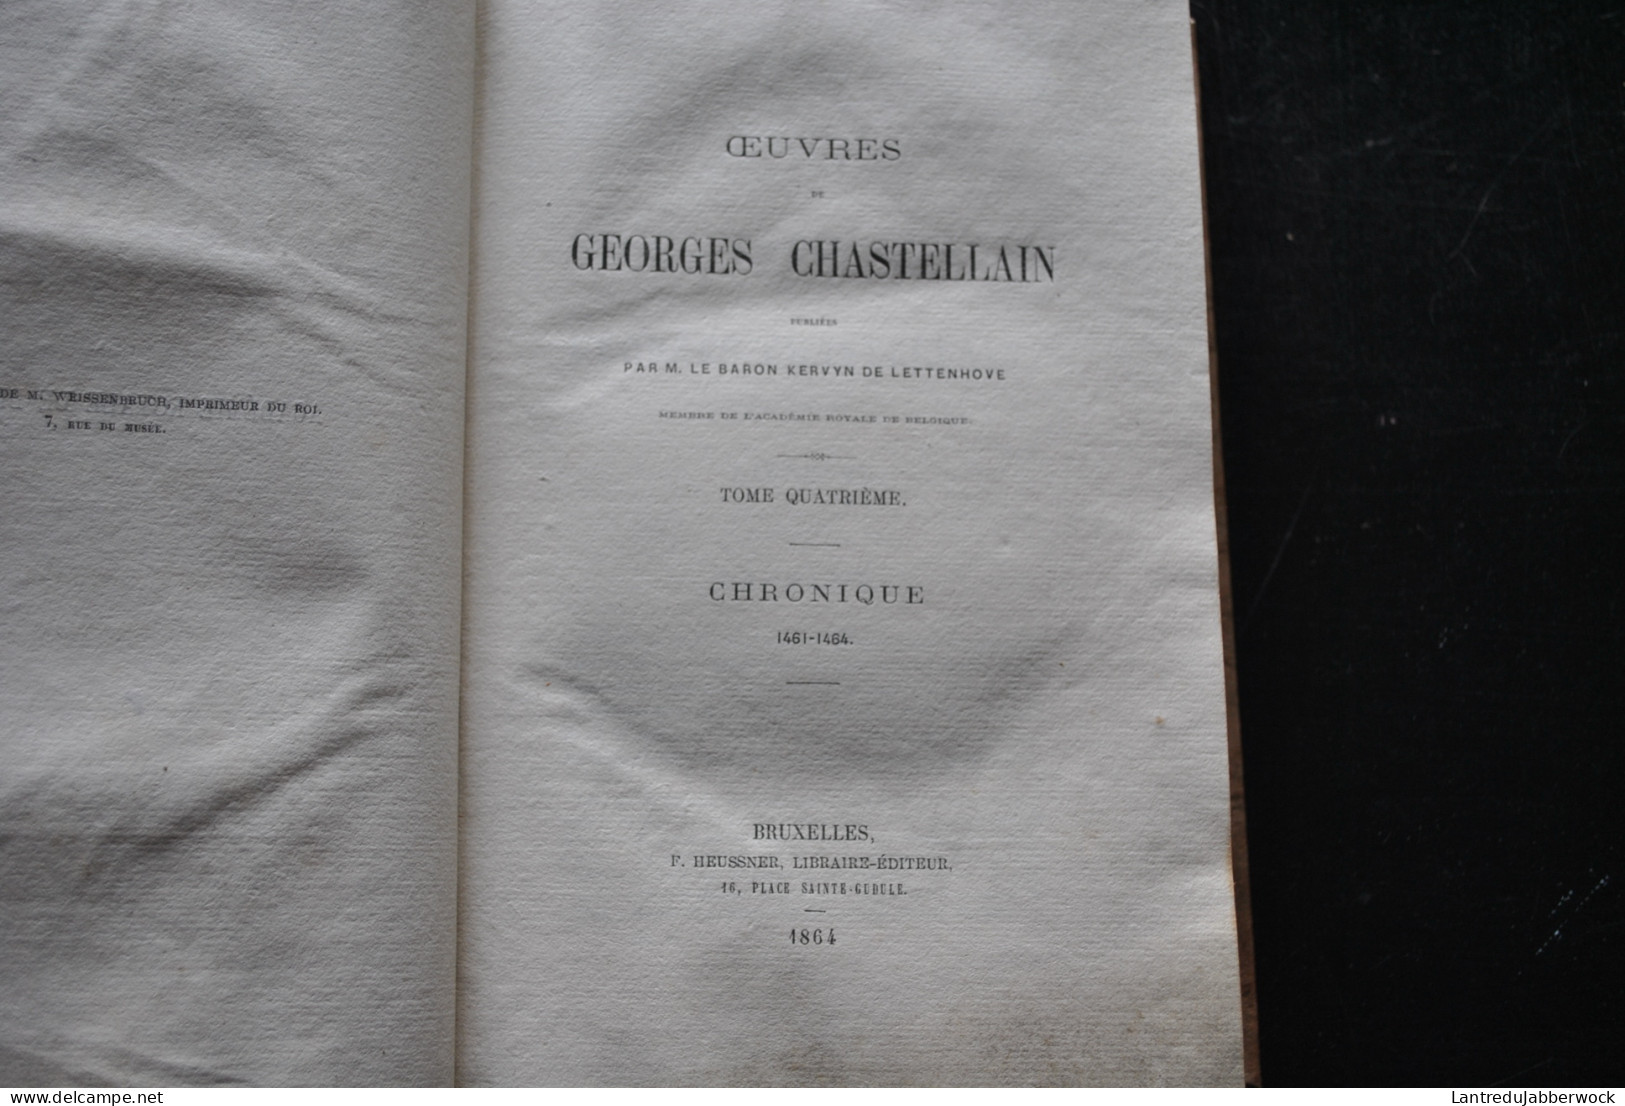 Oeuvres de Georges CHASTELLAIN par Le Baron Kervyn de Lettenhove Complet 8 Vol 1863 HEUSSNER Historien Gand Chroniqeur